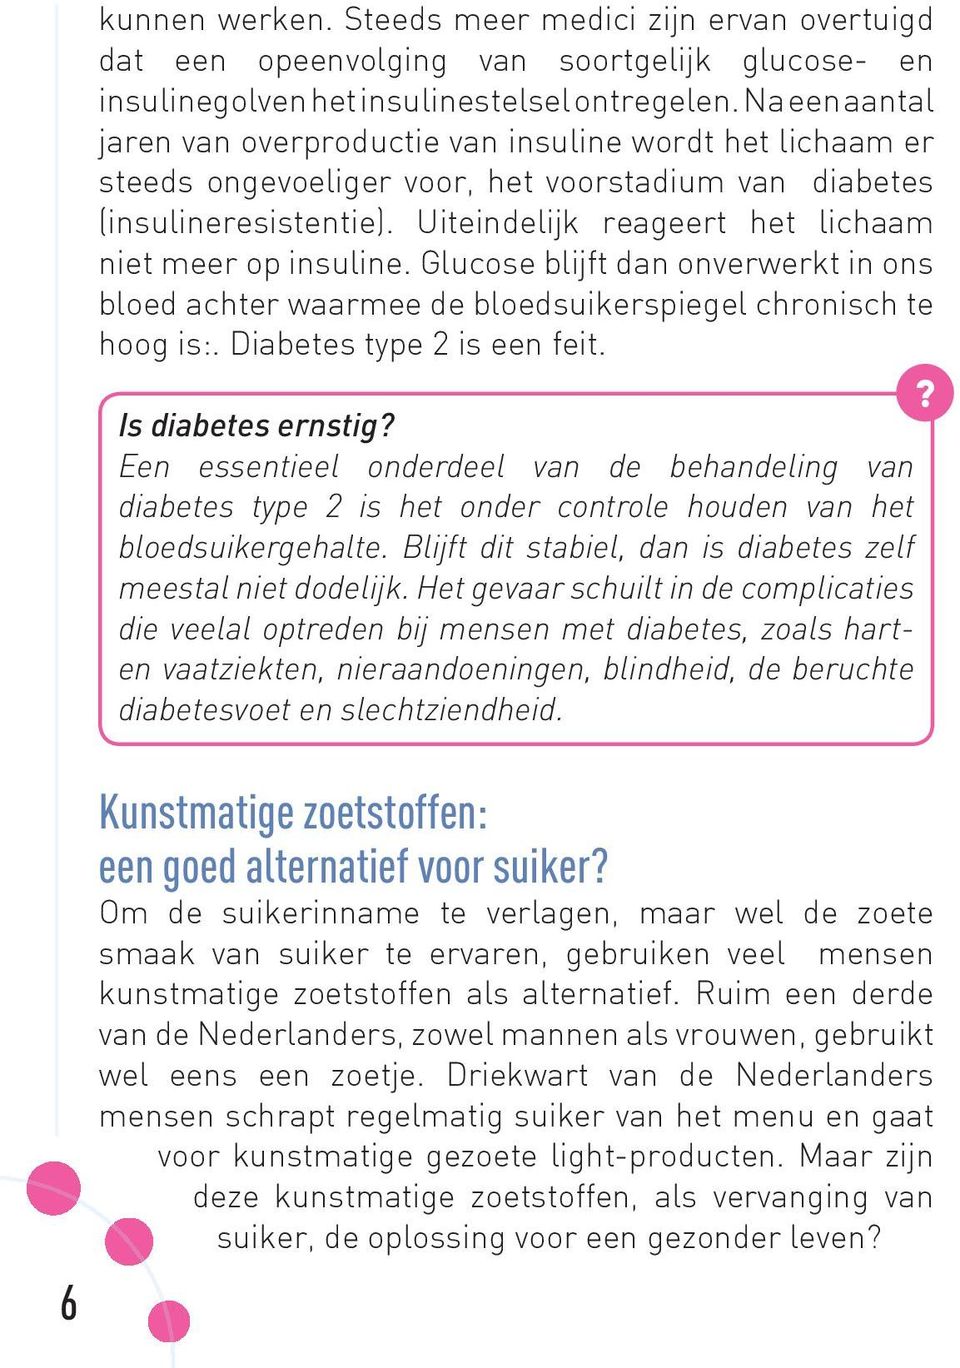 Uiteindelijk reageert het lichaam niet meer op insuline. Glucose blijft dan onverwerkt in ons bloed achter waarmee de bloedsuikerspiegel chronisch te hoog is:. Diabetes type 2 is een feit.